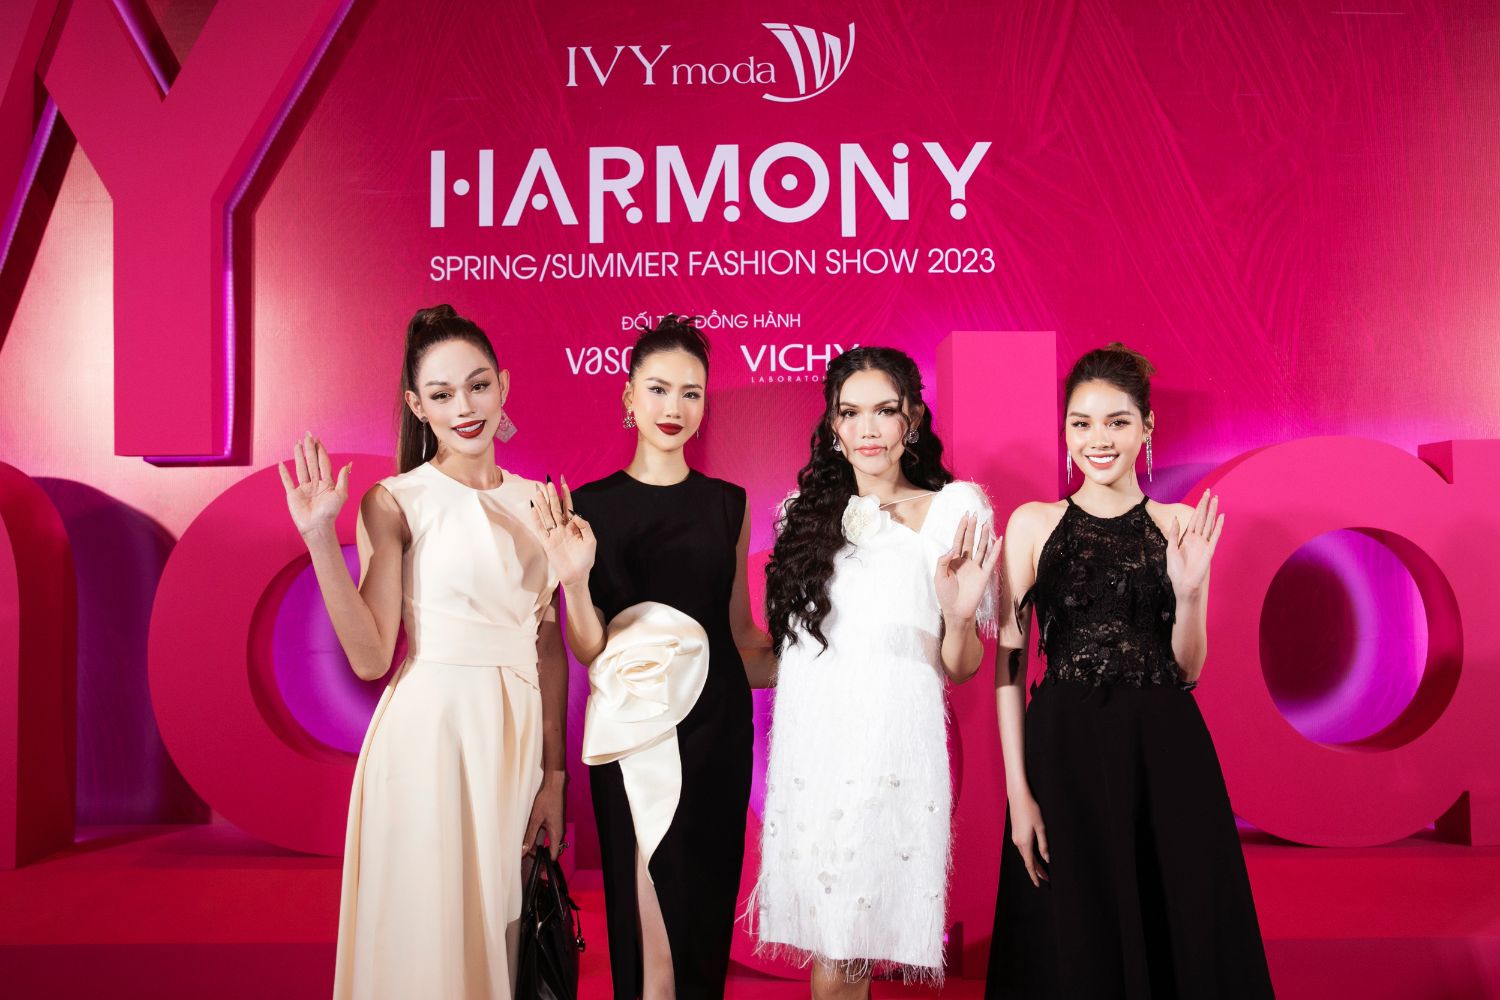 show diễn thời trang IVY moda 4 Minh Hằng khoe thần sắc “mẹ bầu” hội ngộ Tóc Tiên, Sam, Phương Nhi